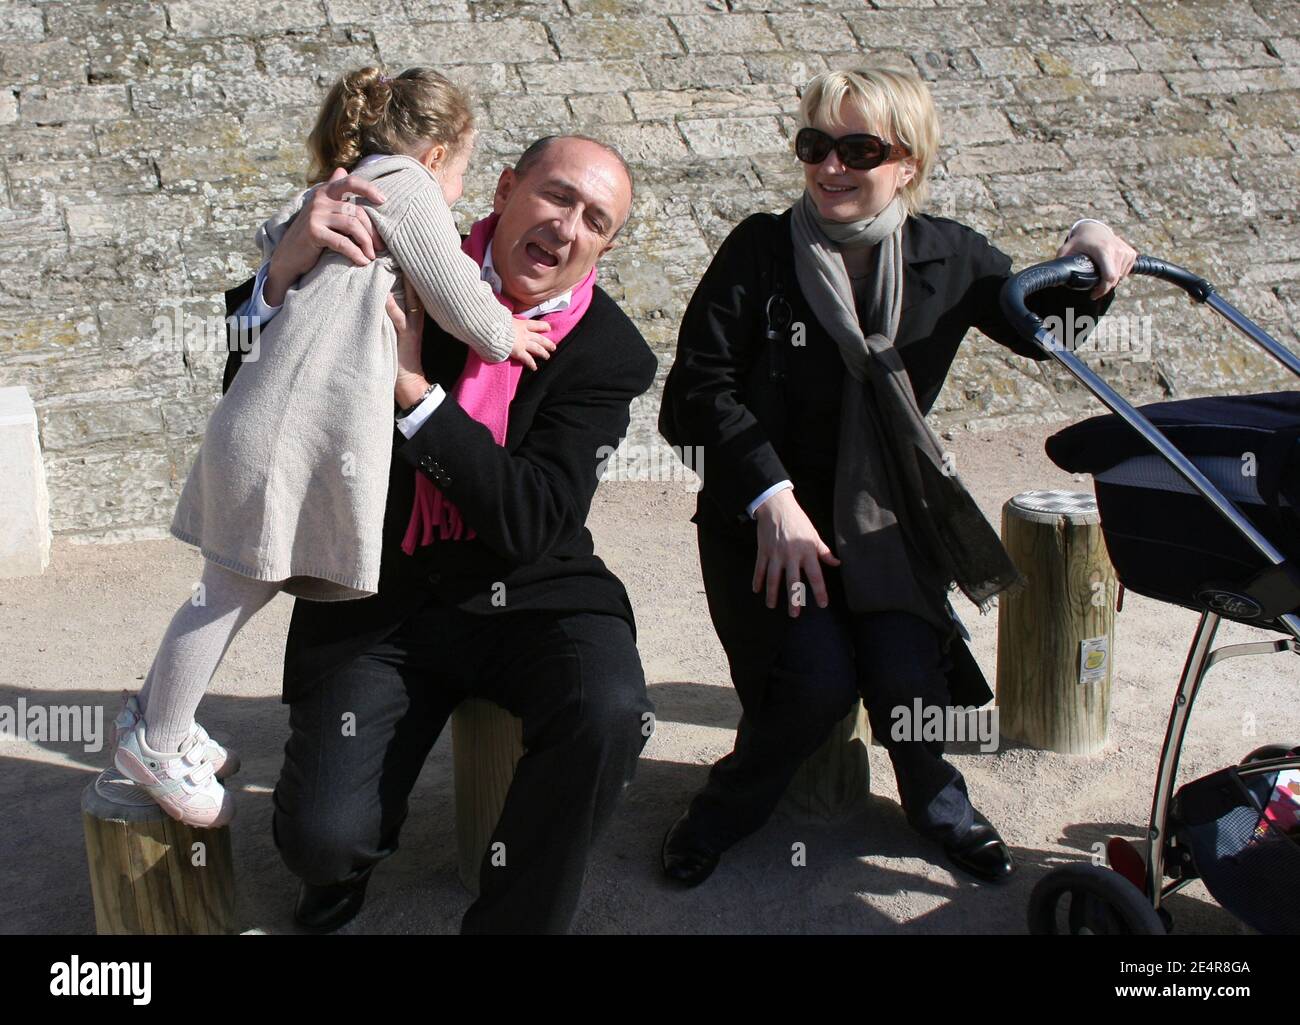 Le maire de Lyon Gérard Collomb pose avec sa femme caroline et leurs  filles, Clemence (3) et Camille (2), le long du Rhône à Lyon (France), le 2  mars 2008. Photo de